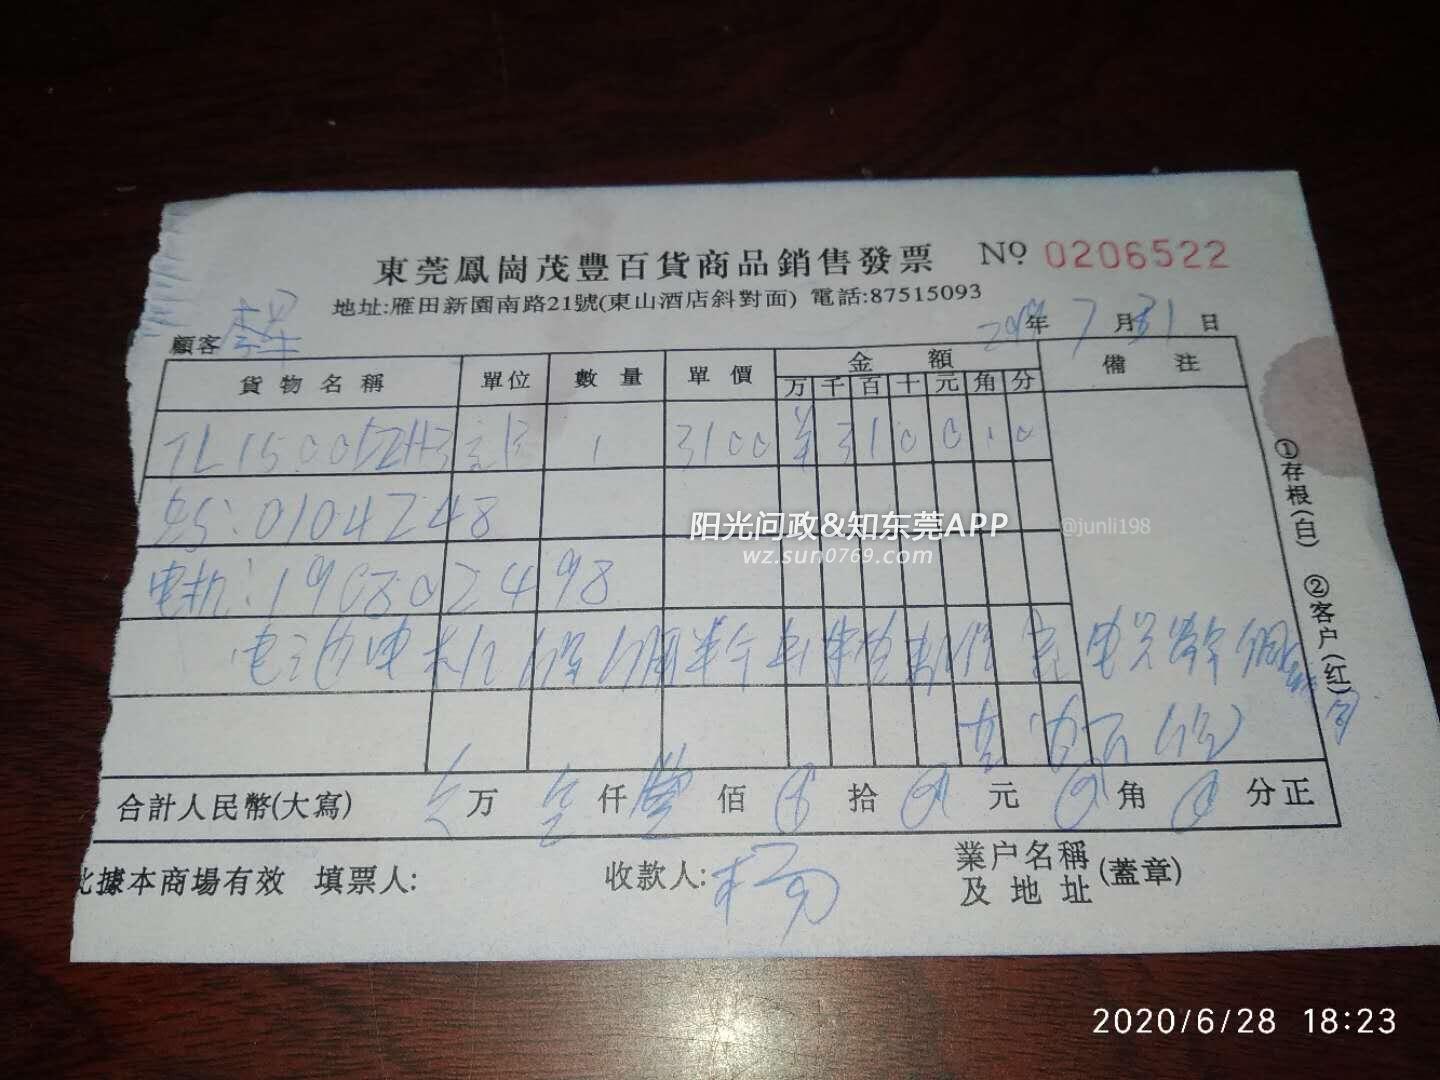 2019年7月31日在凤岗台铃总经销购入一台三轮车,前天在原购买处维修